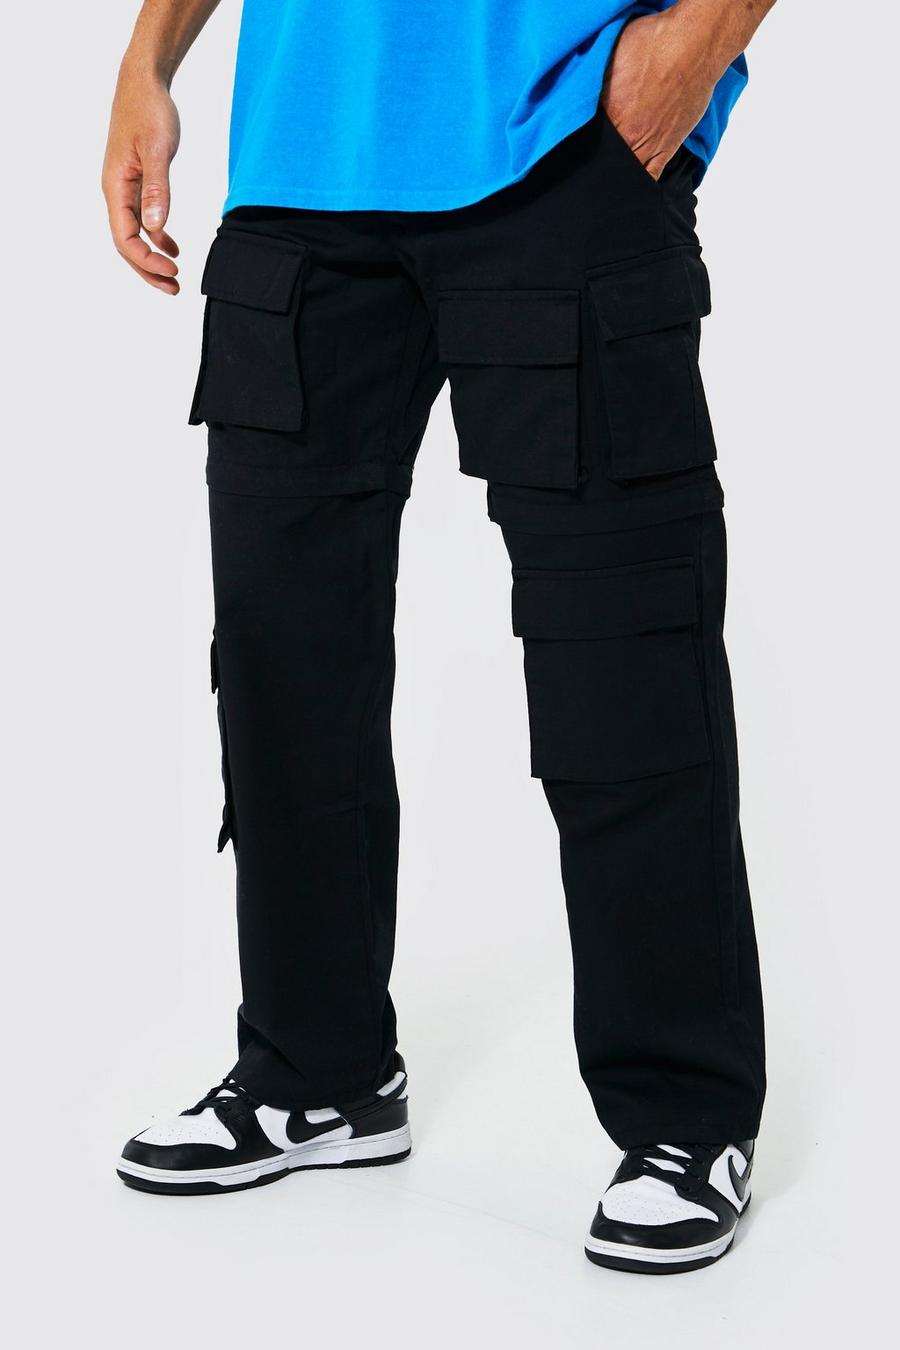 Pantaloni Cargo rilassati in nylon ripstop con gamba rimuovibile, Black